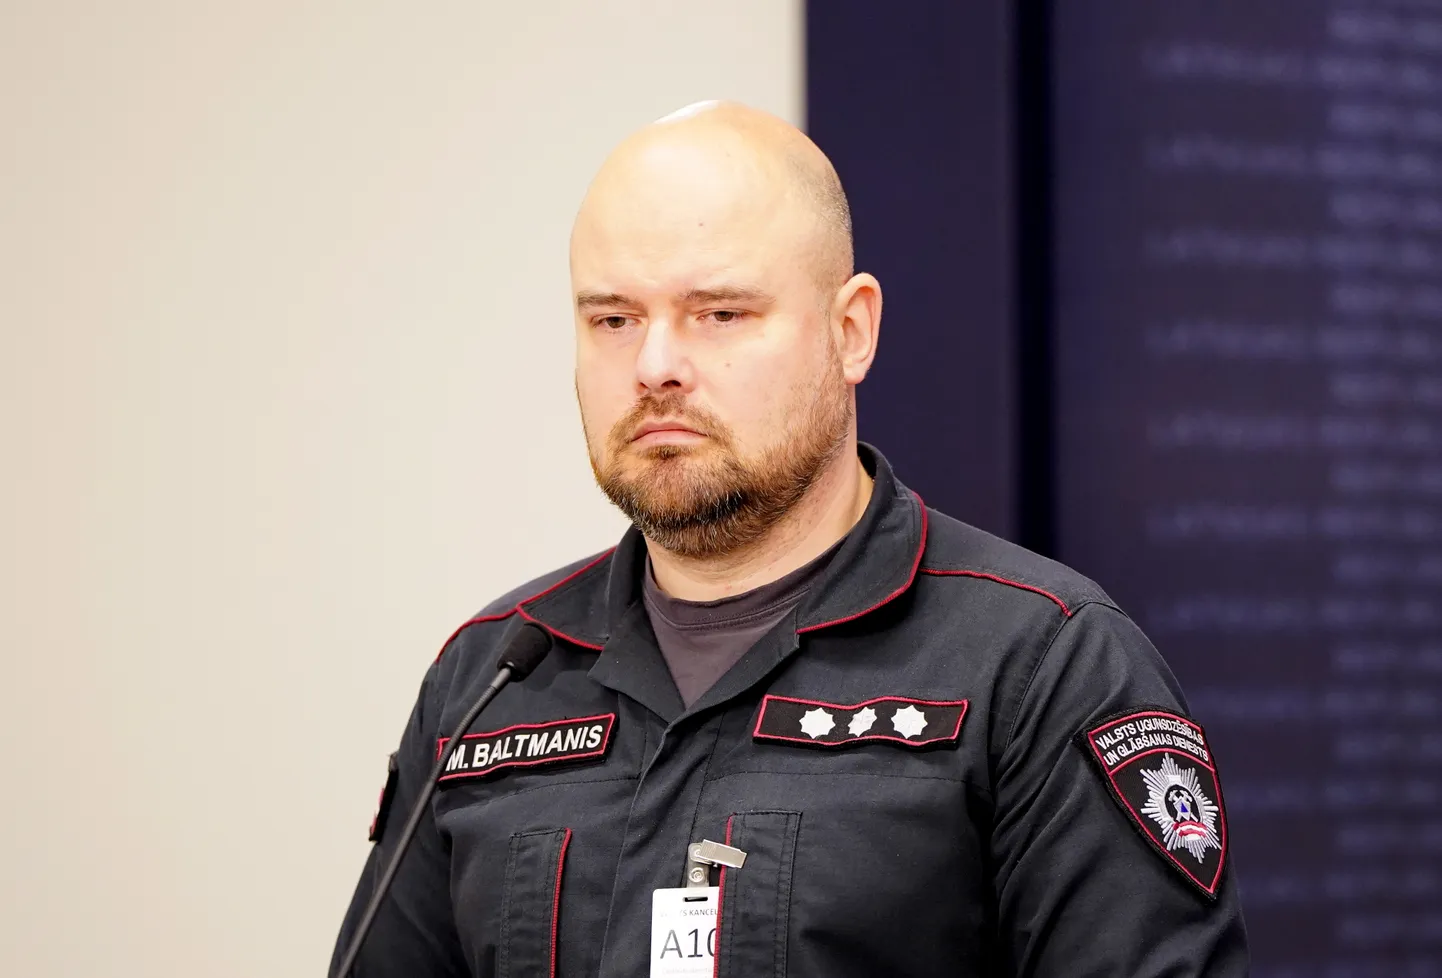 Начальник Государственной пожарно-спасательной службы (VUGD) Мартиньш Балтманис